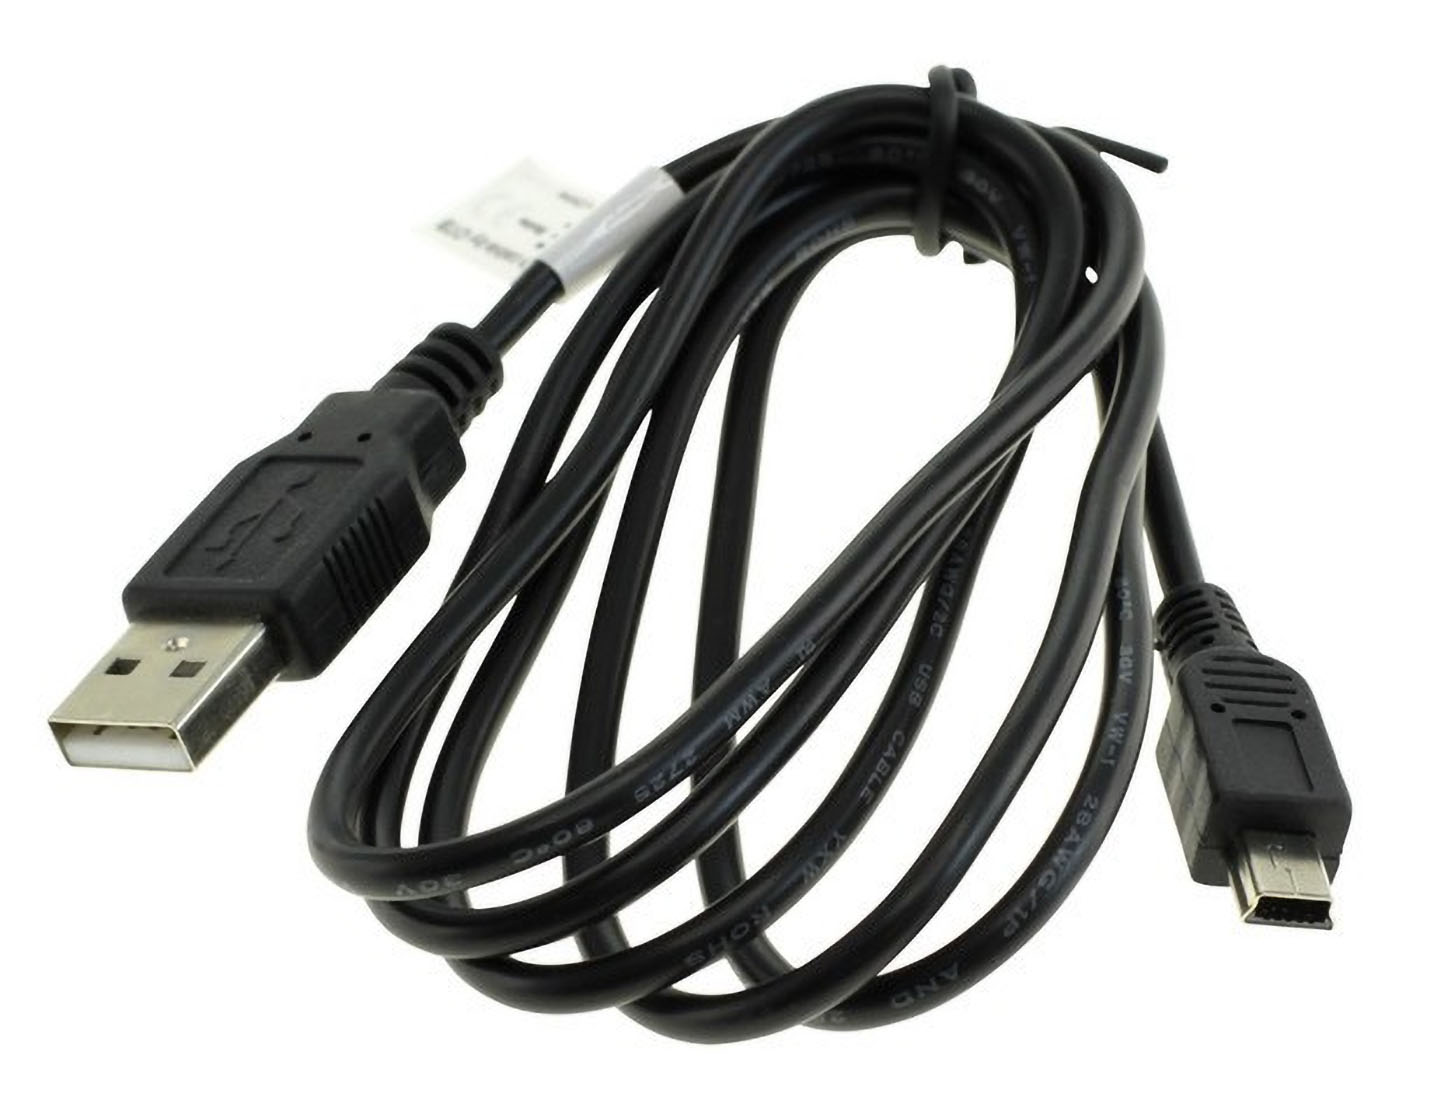 Medion, Life schwarz Kabel Medion MOBILOTEC kompatibel mit sonstige USB-Datenkabel E44050